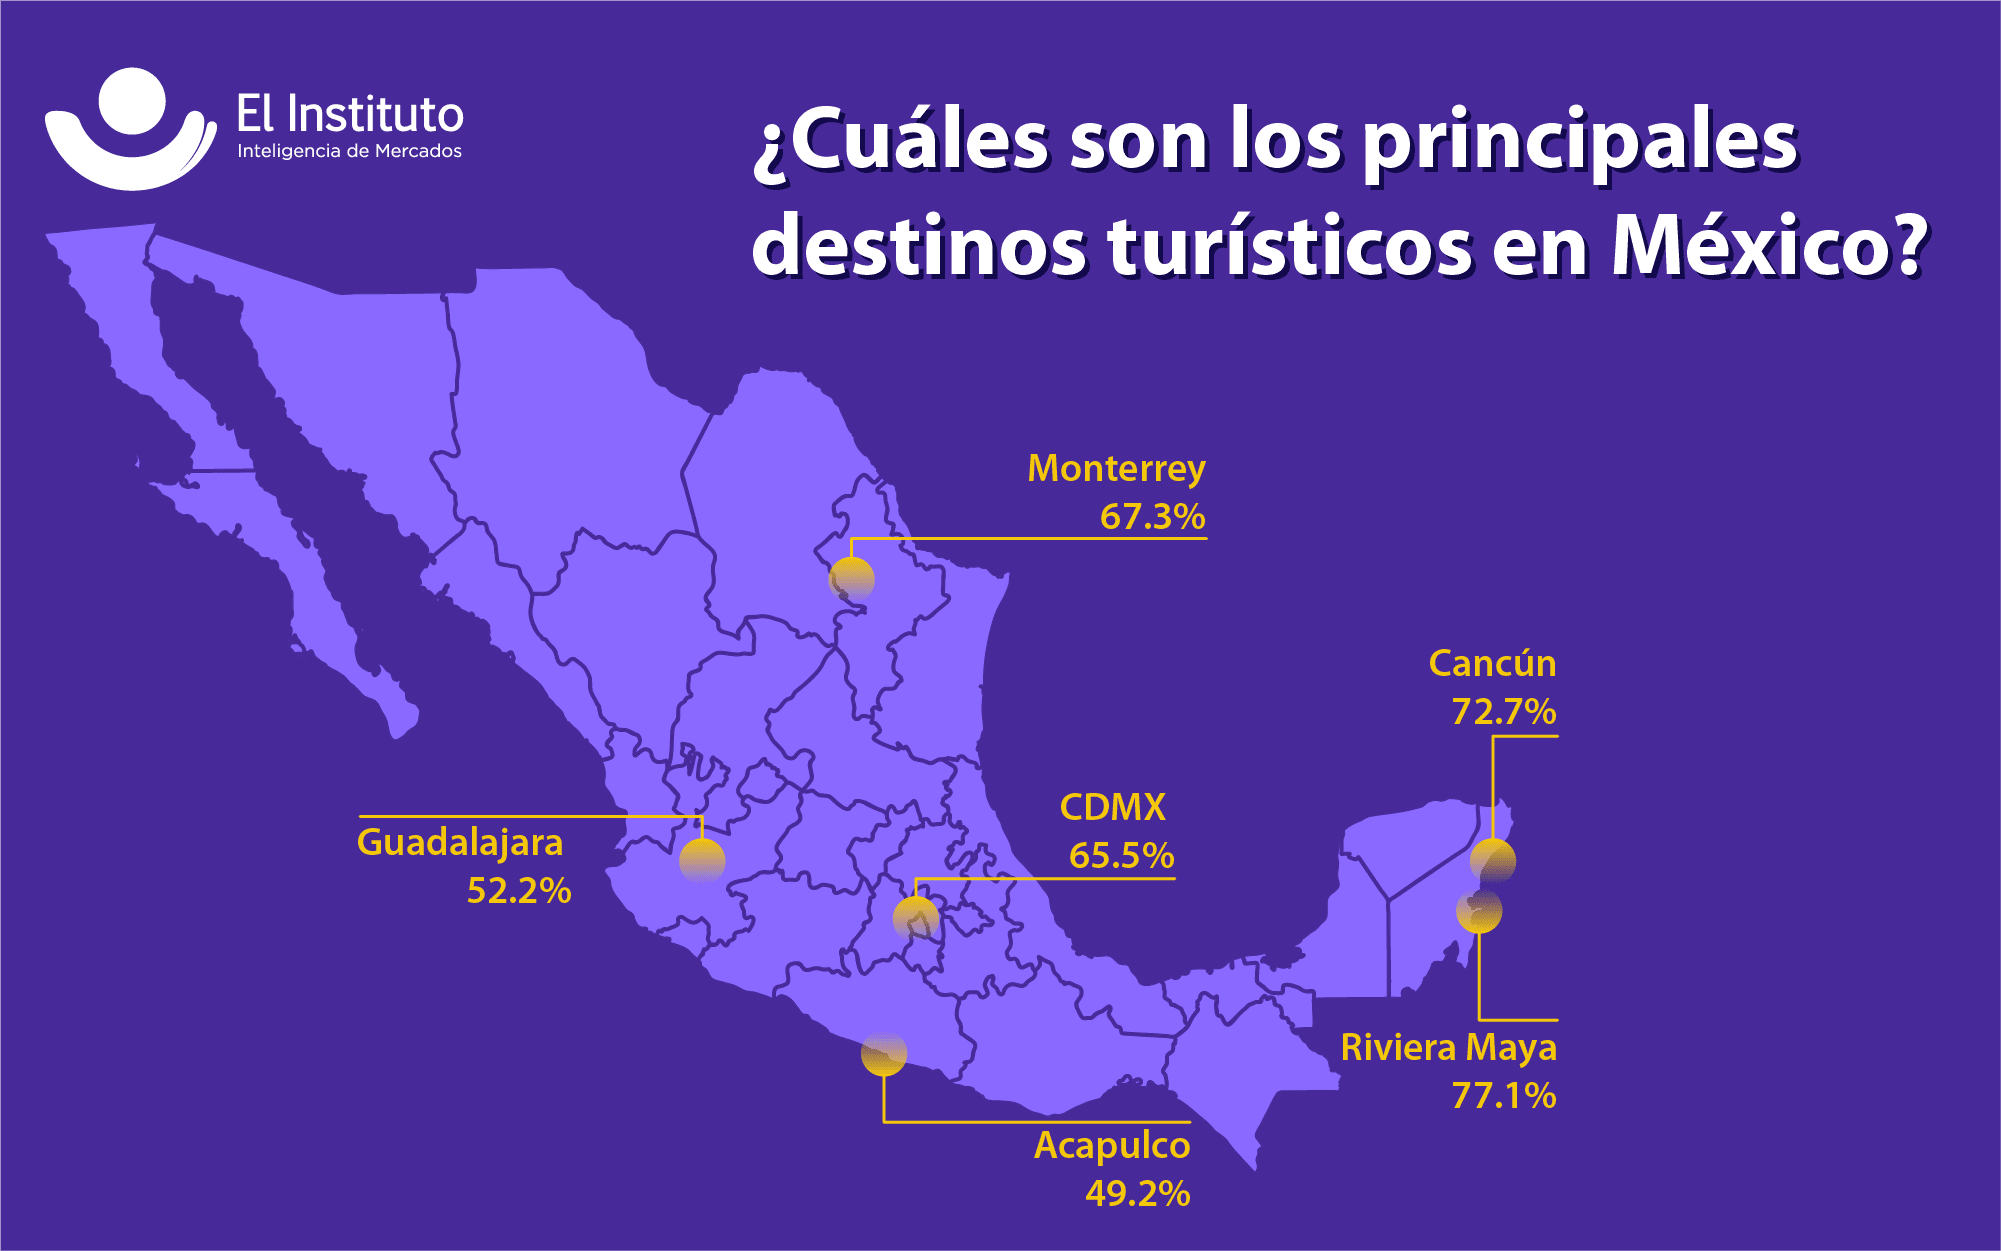 El turismo es una de las actividades económicas más importantes del país. México cuenta con diversas zonas turísticas, sin embargo, ciertas regiones son más atractivas para los visitantes.